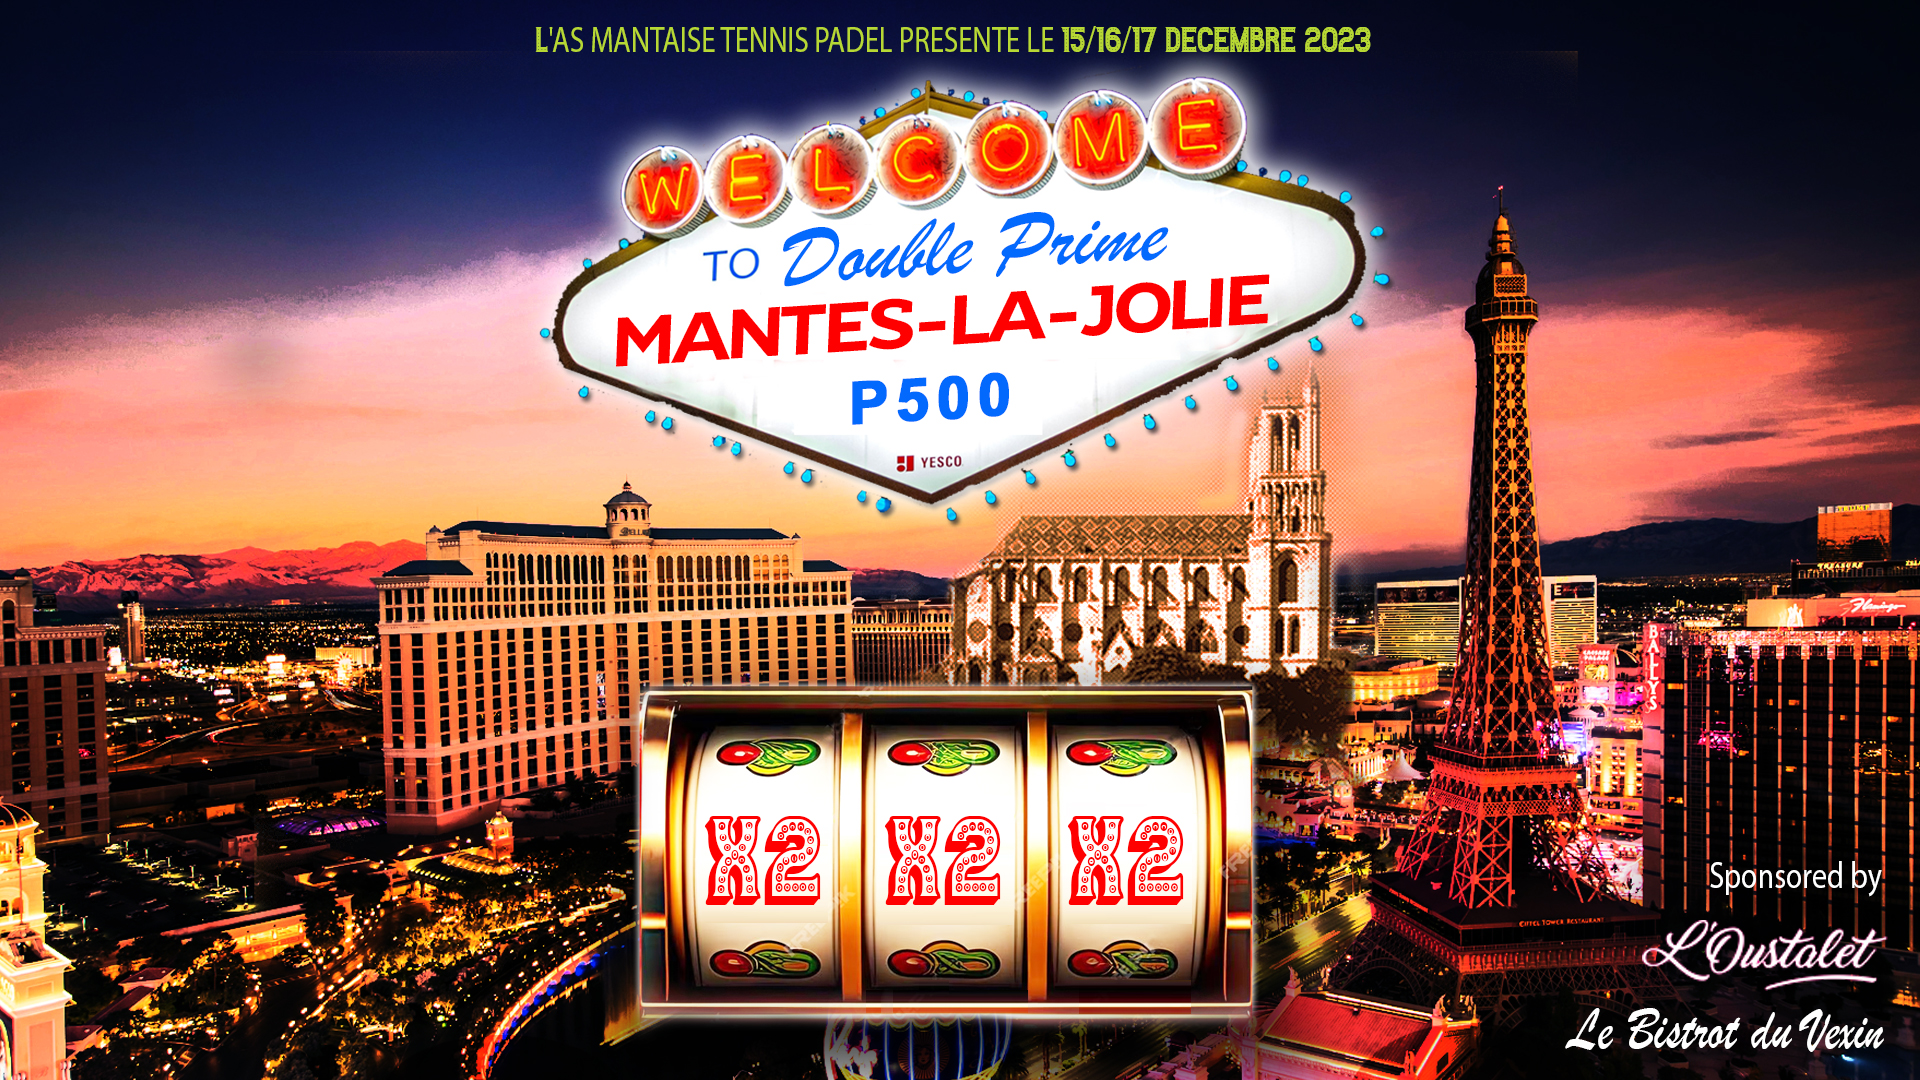 P500 “Double Prime” Mantes-la-Jolie van L'Oustalet